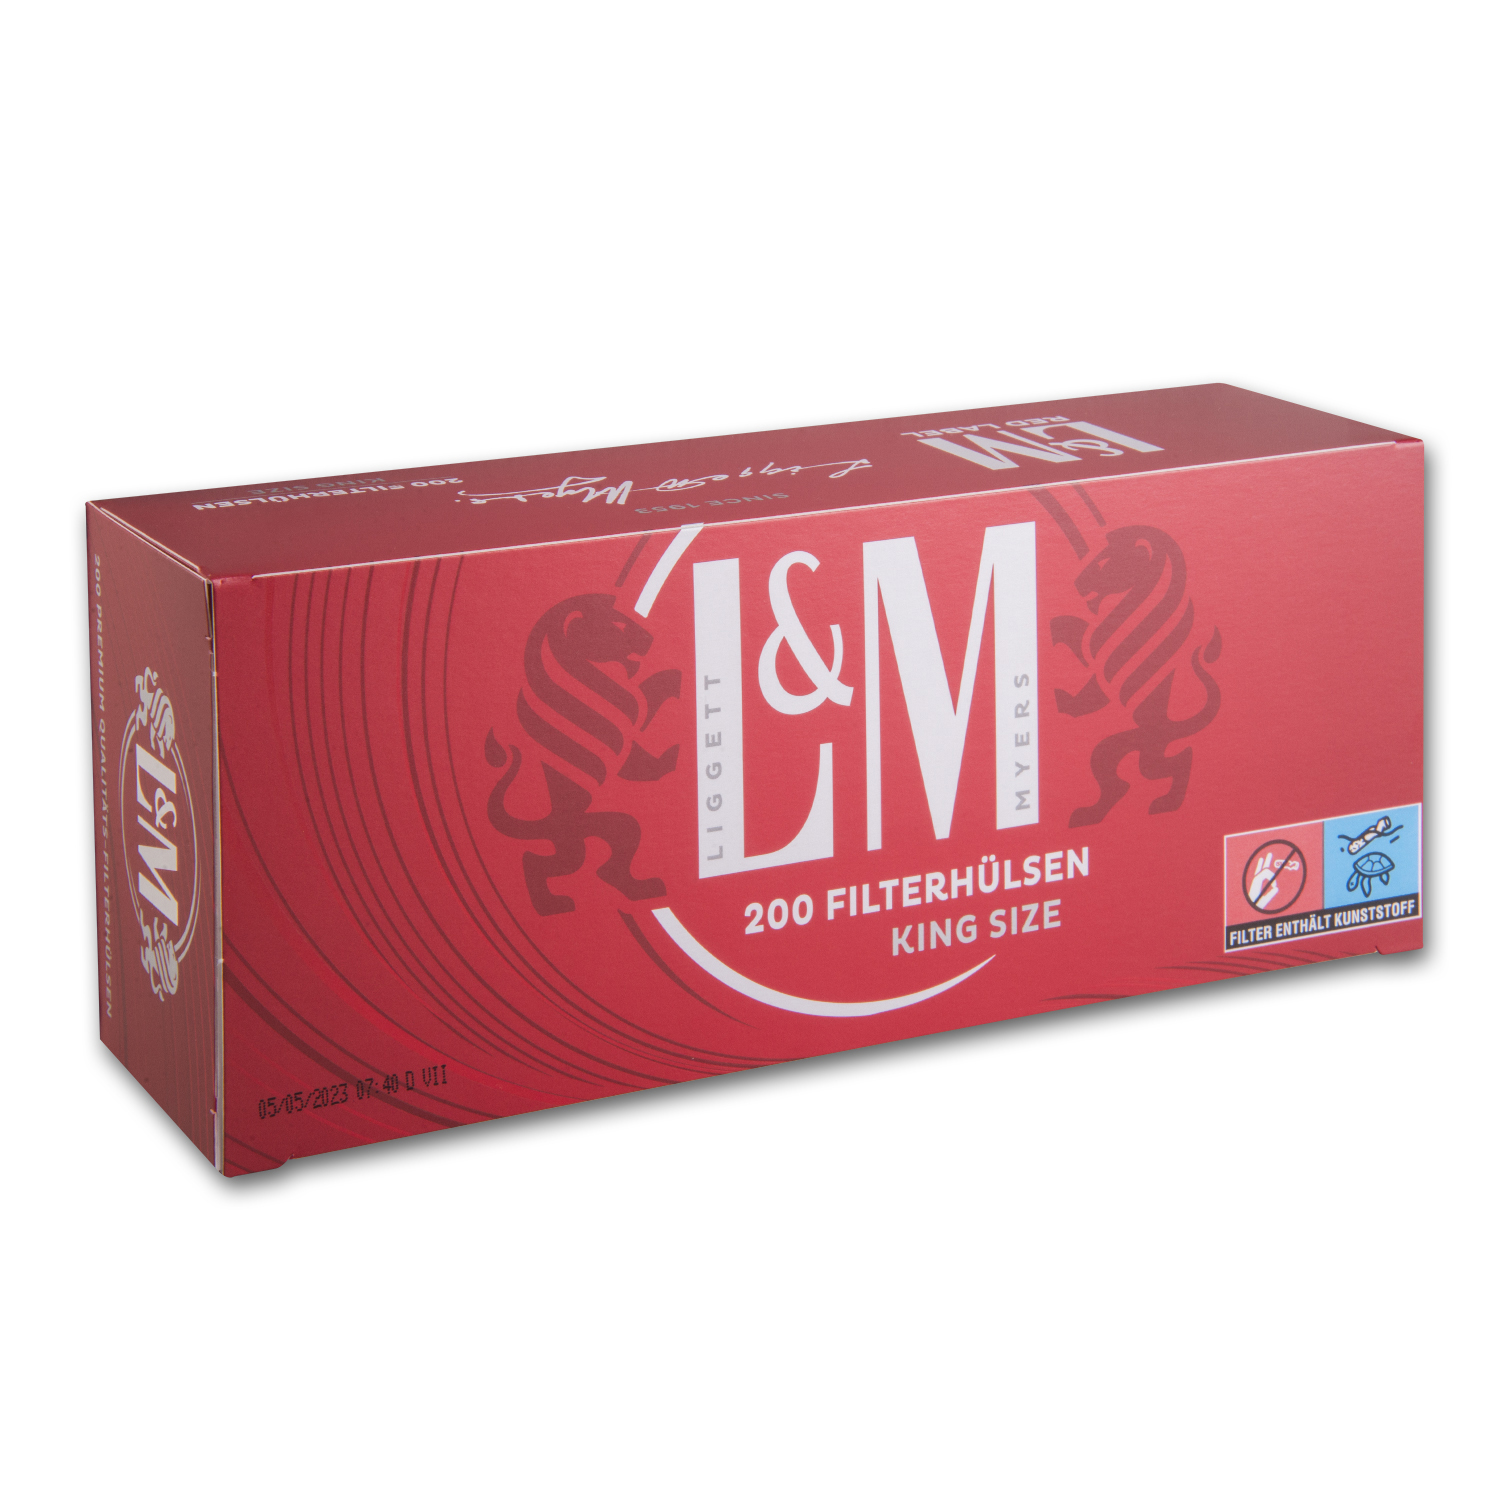 L&M Filterhülsen Red Label 200 Stück 